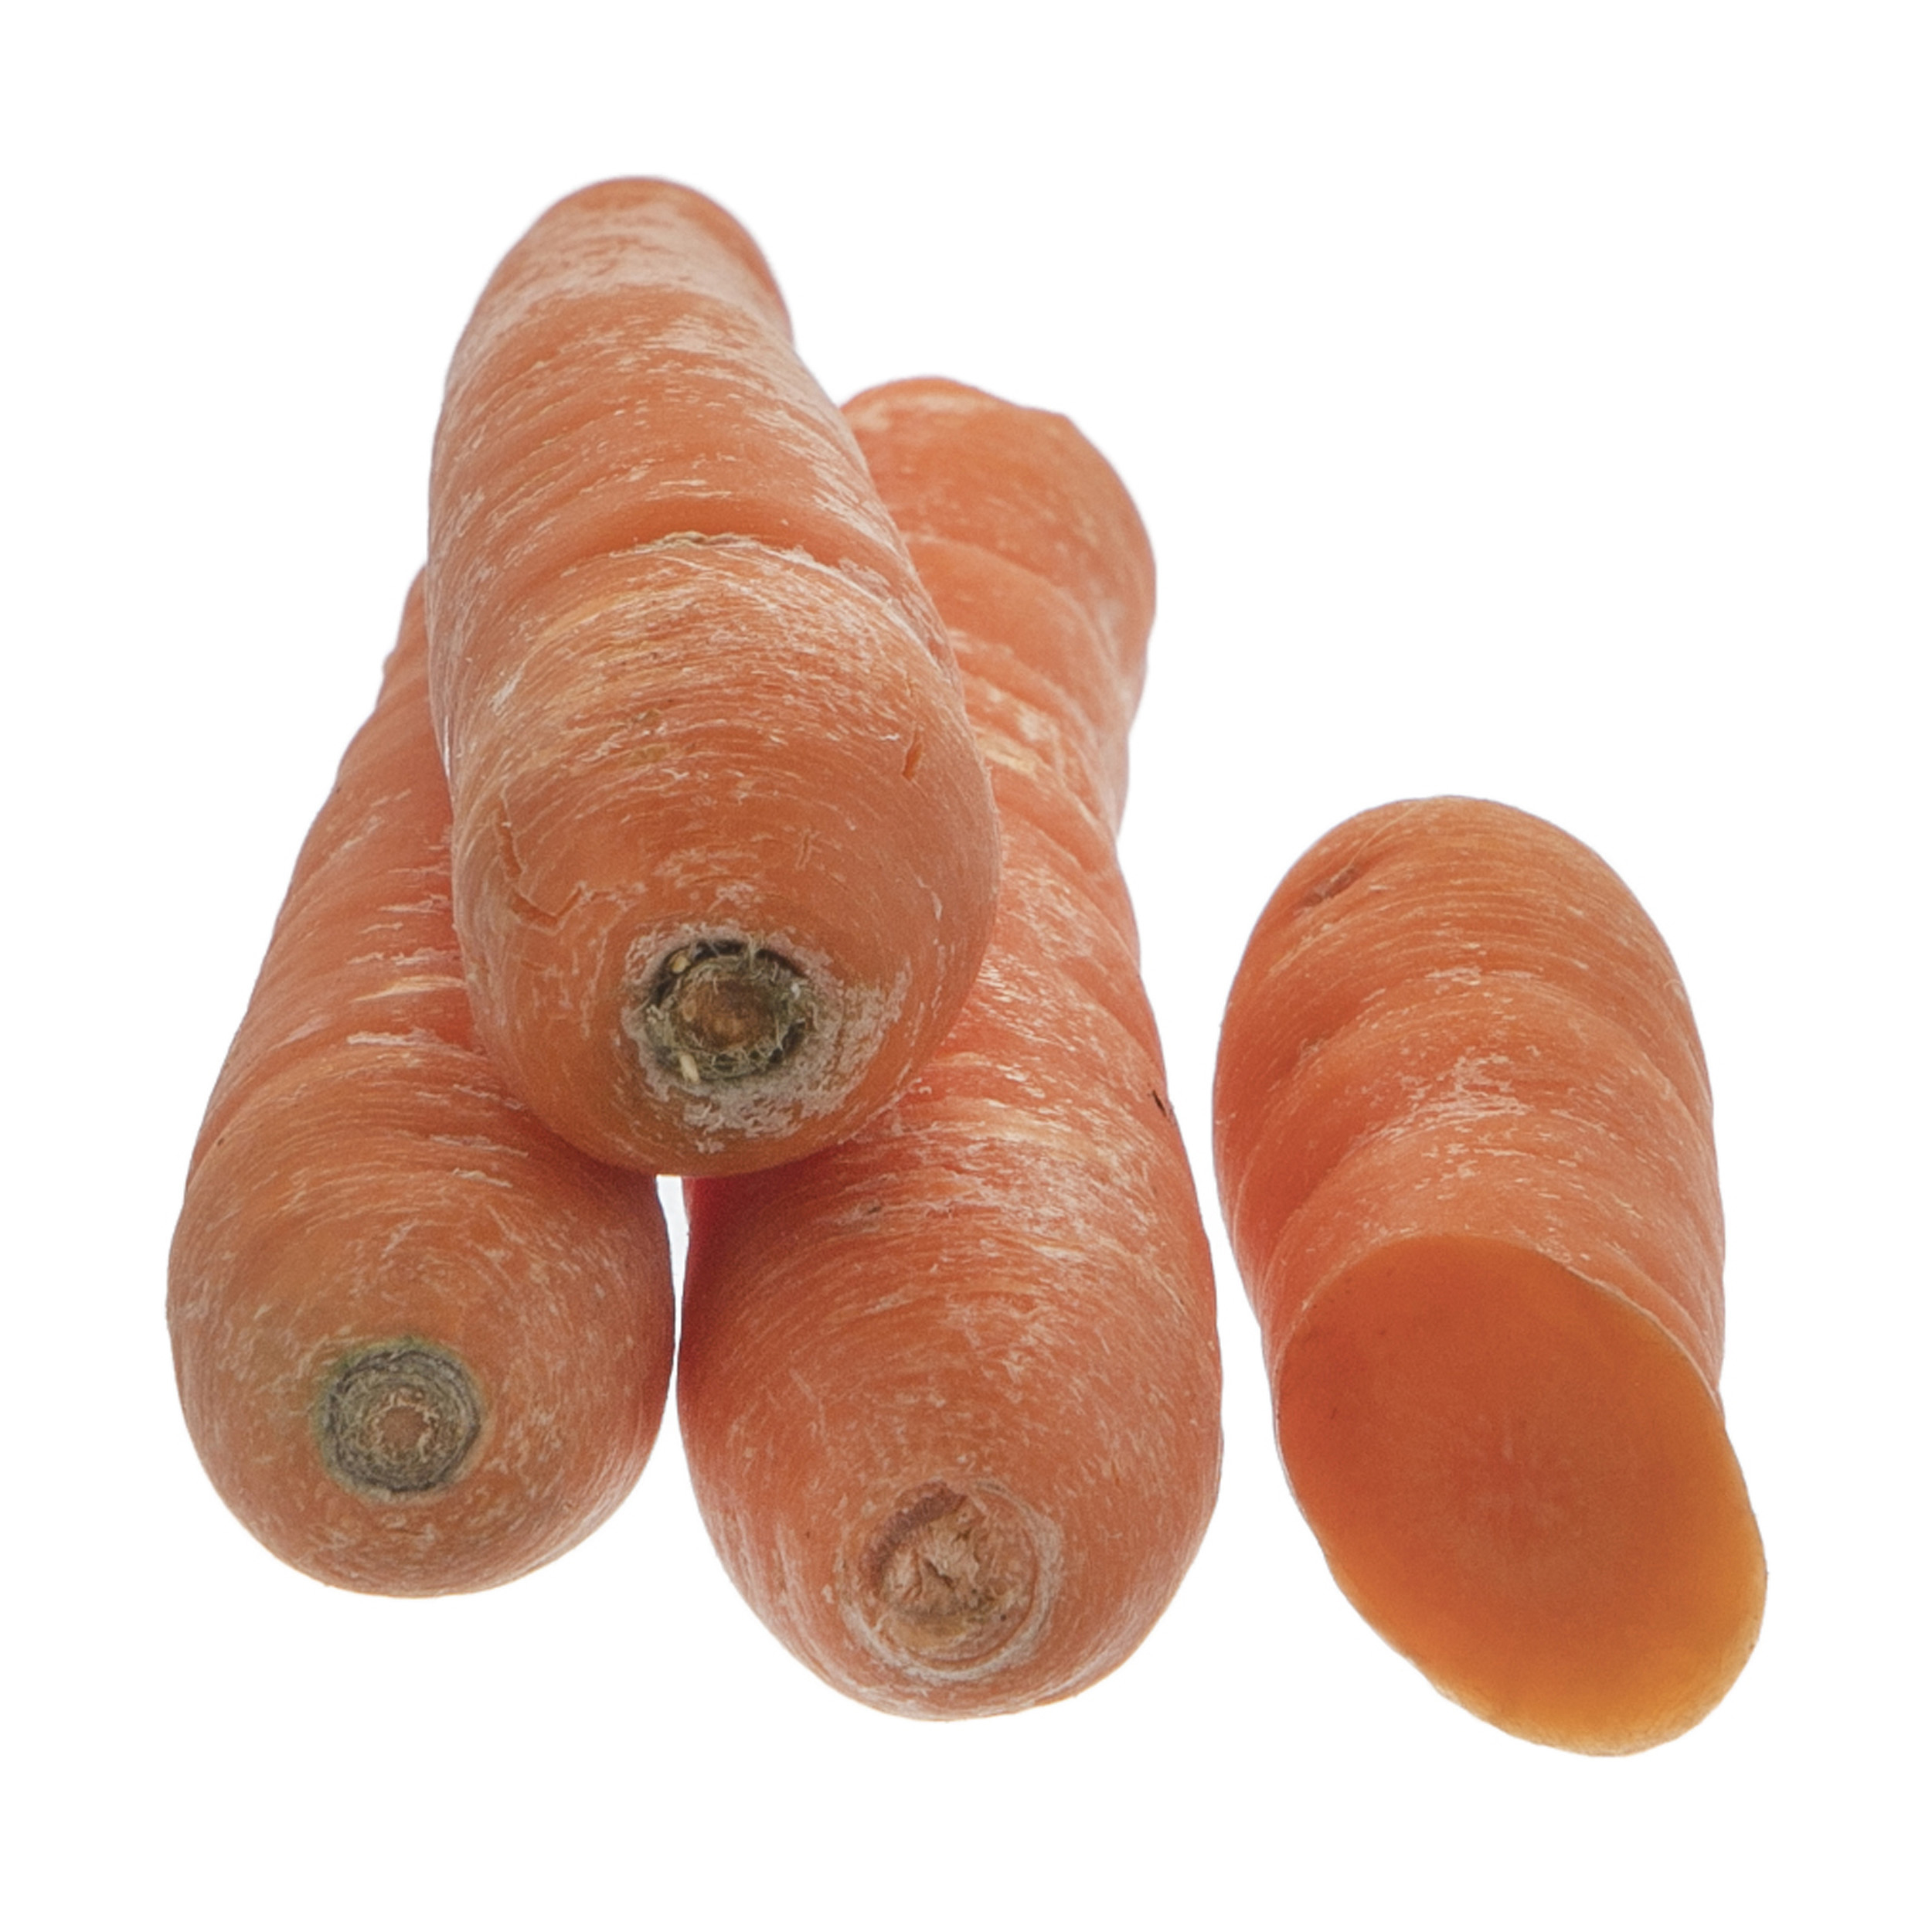 هویج ارگانیک رضوانی - 1 کیلوگرم